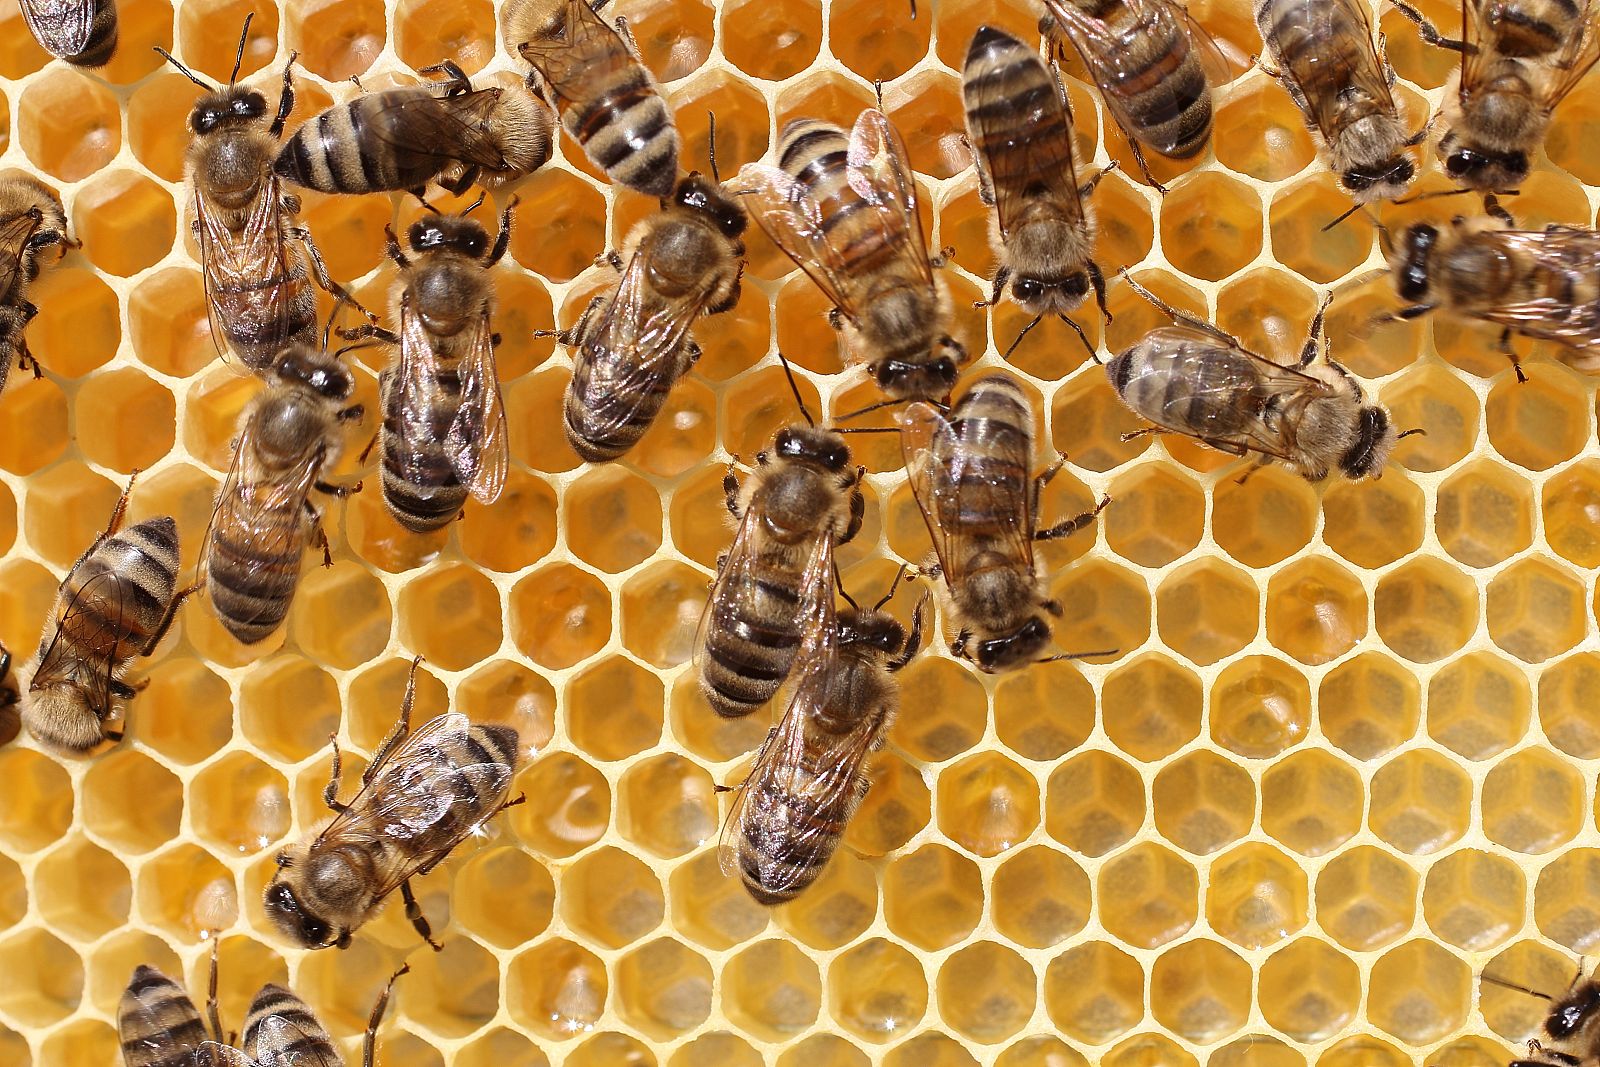 El colapso de colonias es una gran amenaza para las abejas en todo el mundo.